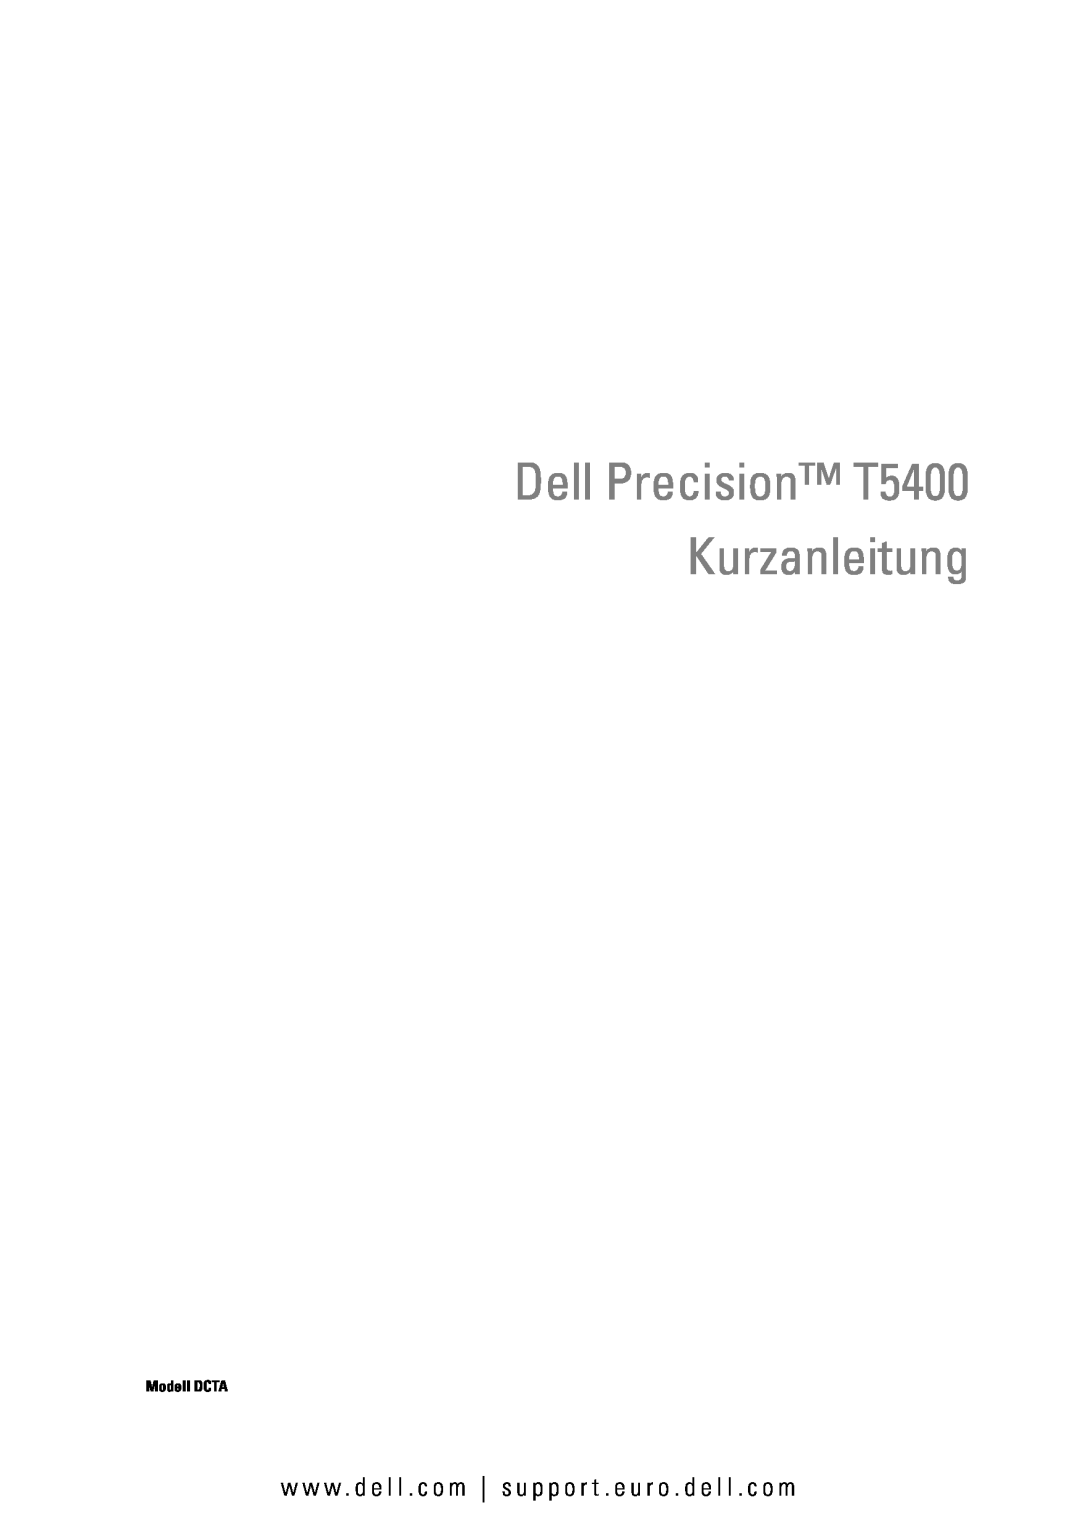 Dell manual Dell Precision T5400 Kurzanleitung, w w w . d e l l . c o m s u p p o r t . e u r o . d e l l . c o m 